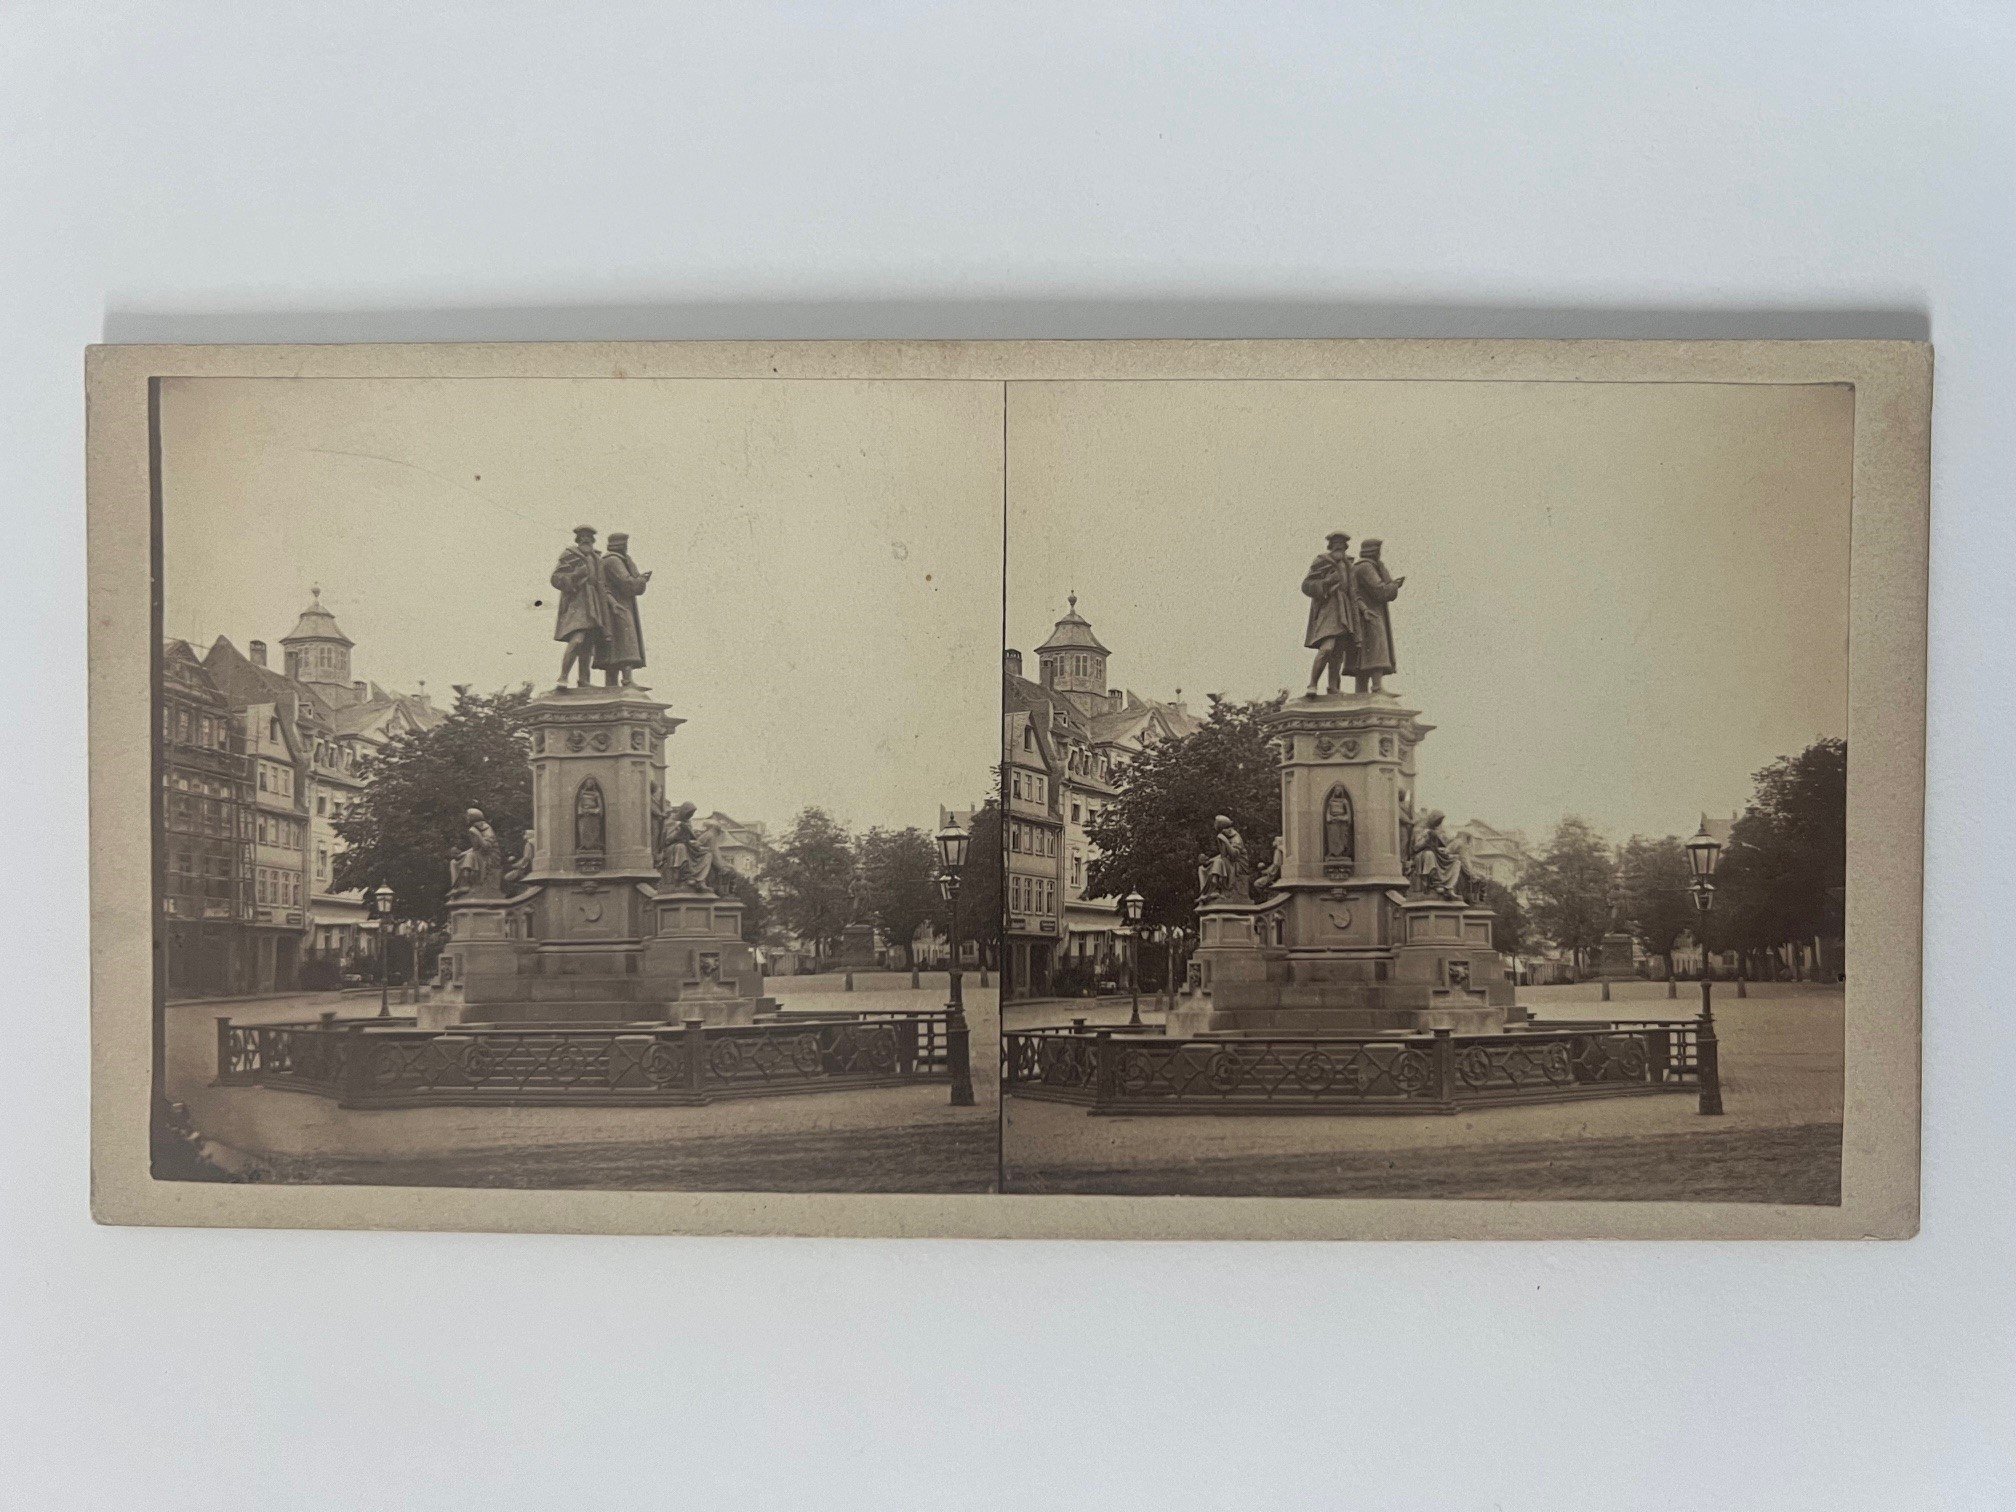 Stereobild, Unbekannter Fotograf, Frankfurt, Guttenberg-Denkmal, ca. 1870. (Taunus-Rhein-Main - Regionalgeschichtliche Sammlung Dr. Stefan Naas CC BY-NC-SA)